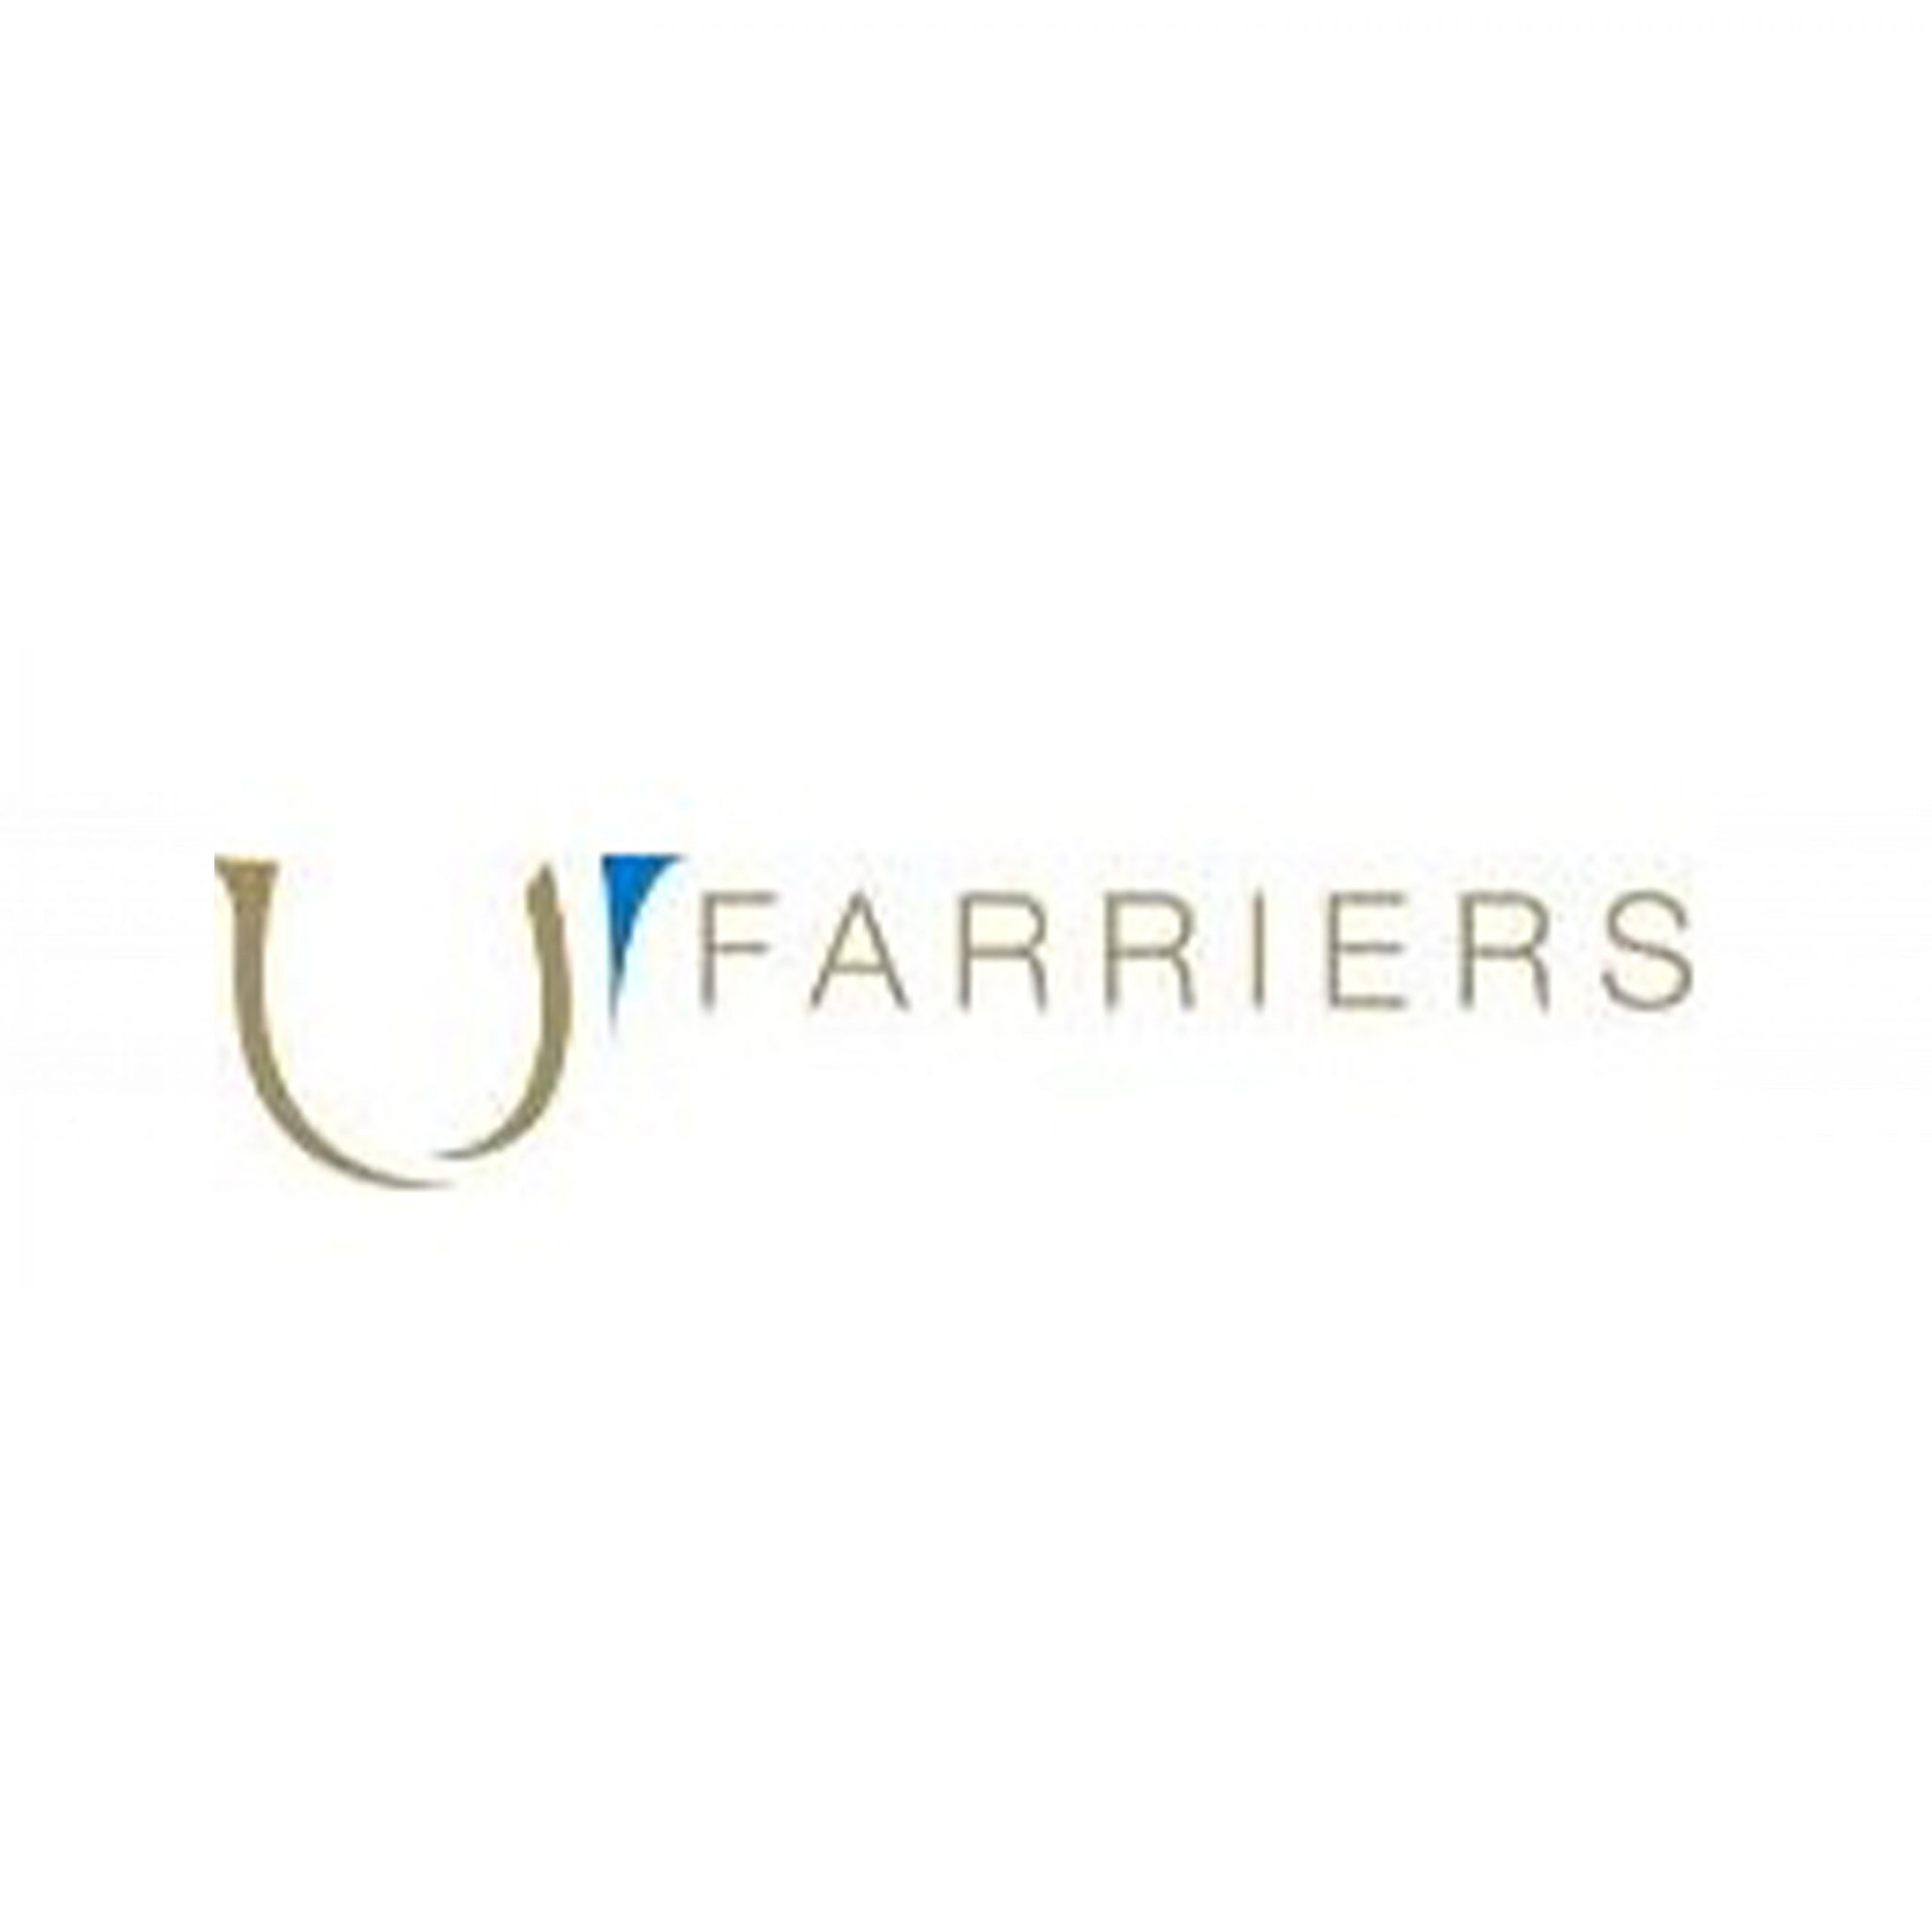 Farriers - Coming Soon in UAE